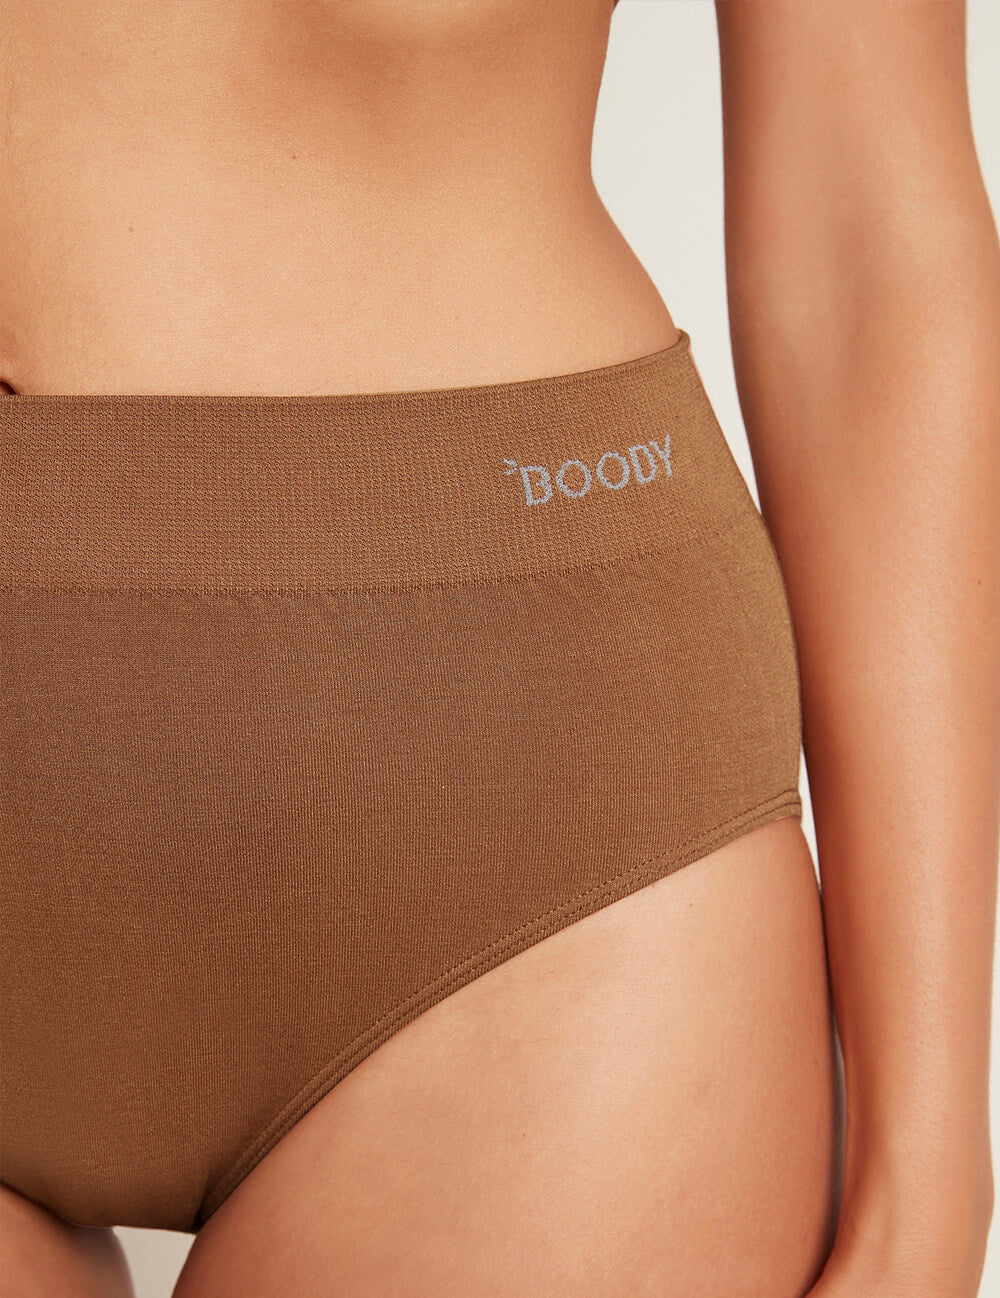 Boody Underwear - Shop Online - Allgoods